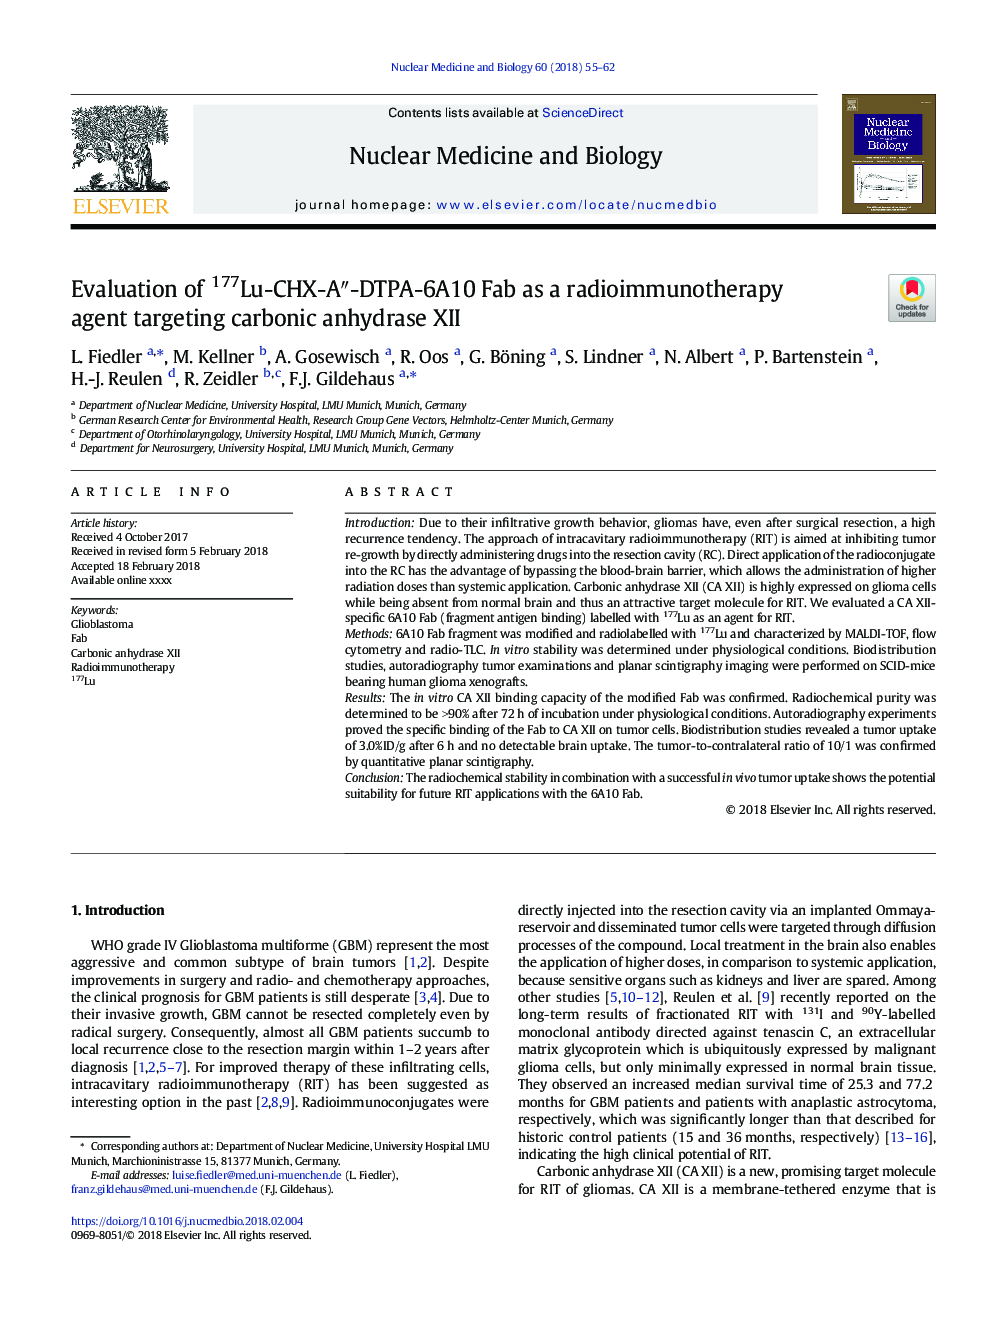 Evaluation of 177Lu[Lu]-CHX-Aâ³-DTPA-6A10 Fab as a radioimmunotherapy agent targeting carbonic anhydrase XII